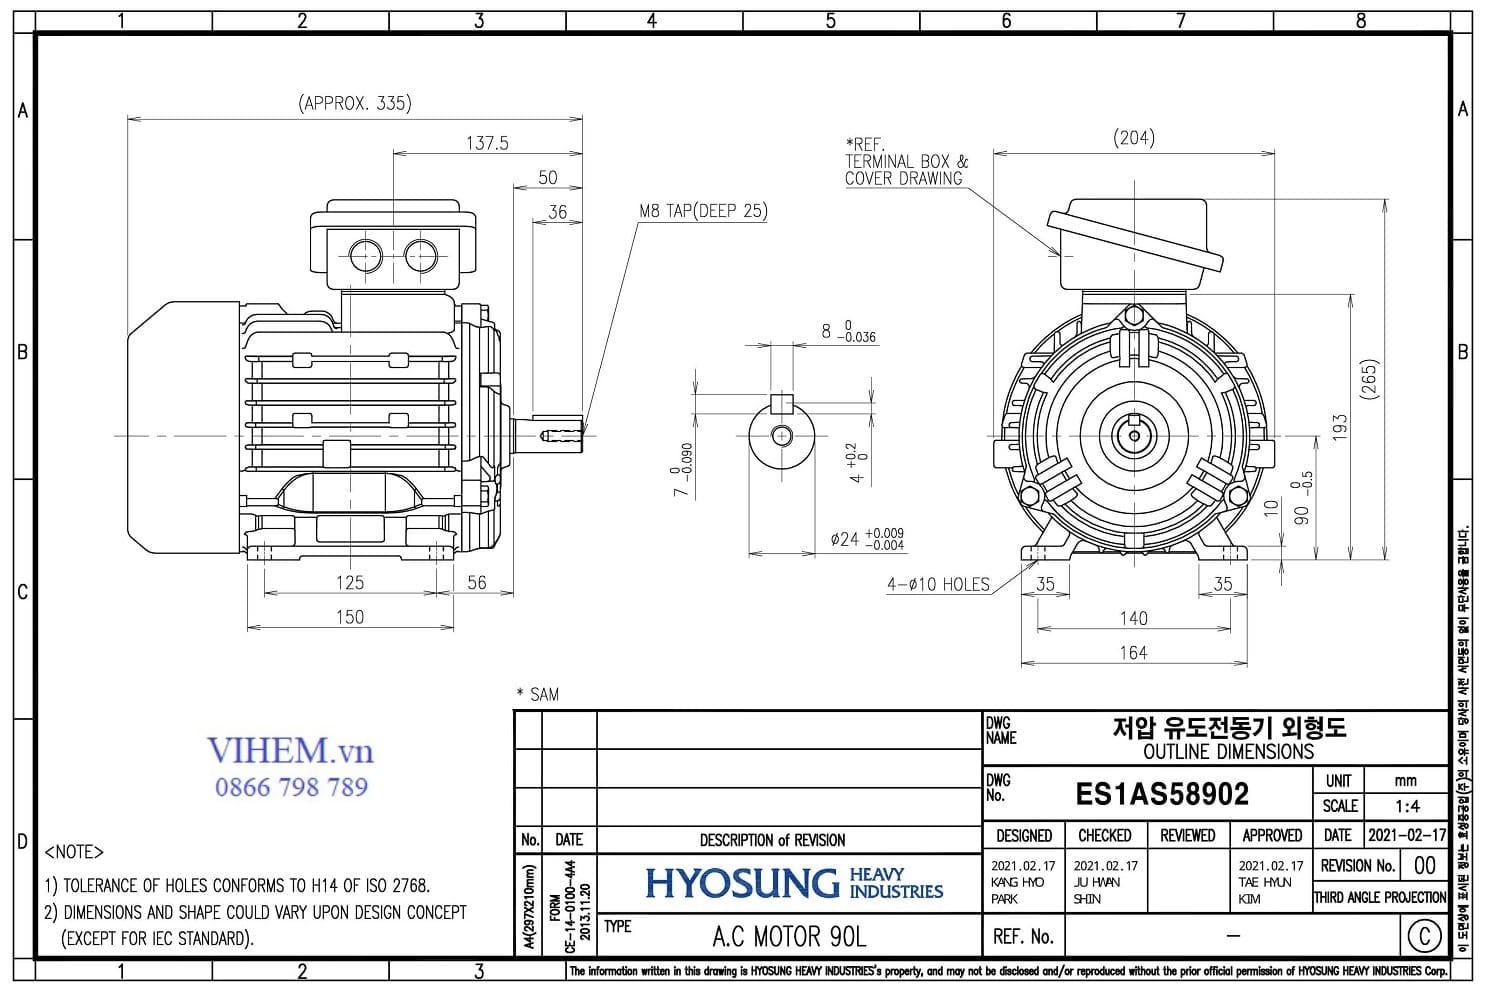 kích thước lắp đặt & thông số kỹ thuật Động cơ Hyosung 1.5kW - 4P - B3 (1500rpm)